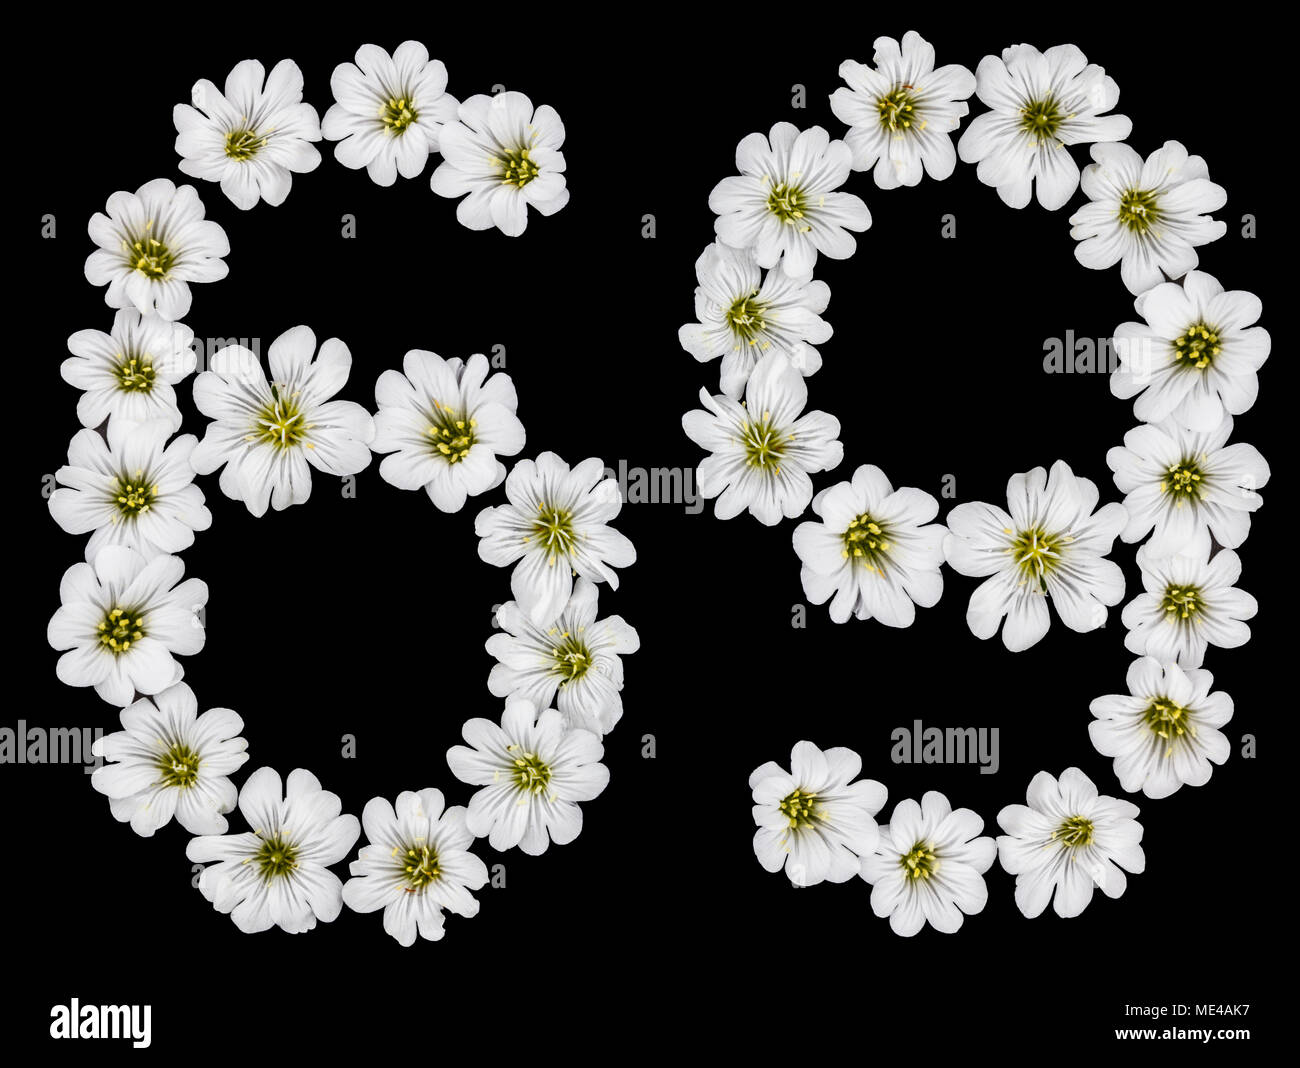 Chiffre arabe 69, soixante-neuf, soixante, six, neuf, à partir de fleurs blanches de Cerastium tomentosum, isolé sur fond noir Banque D'Images